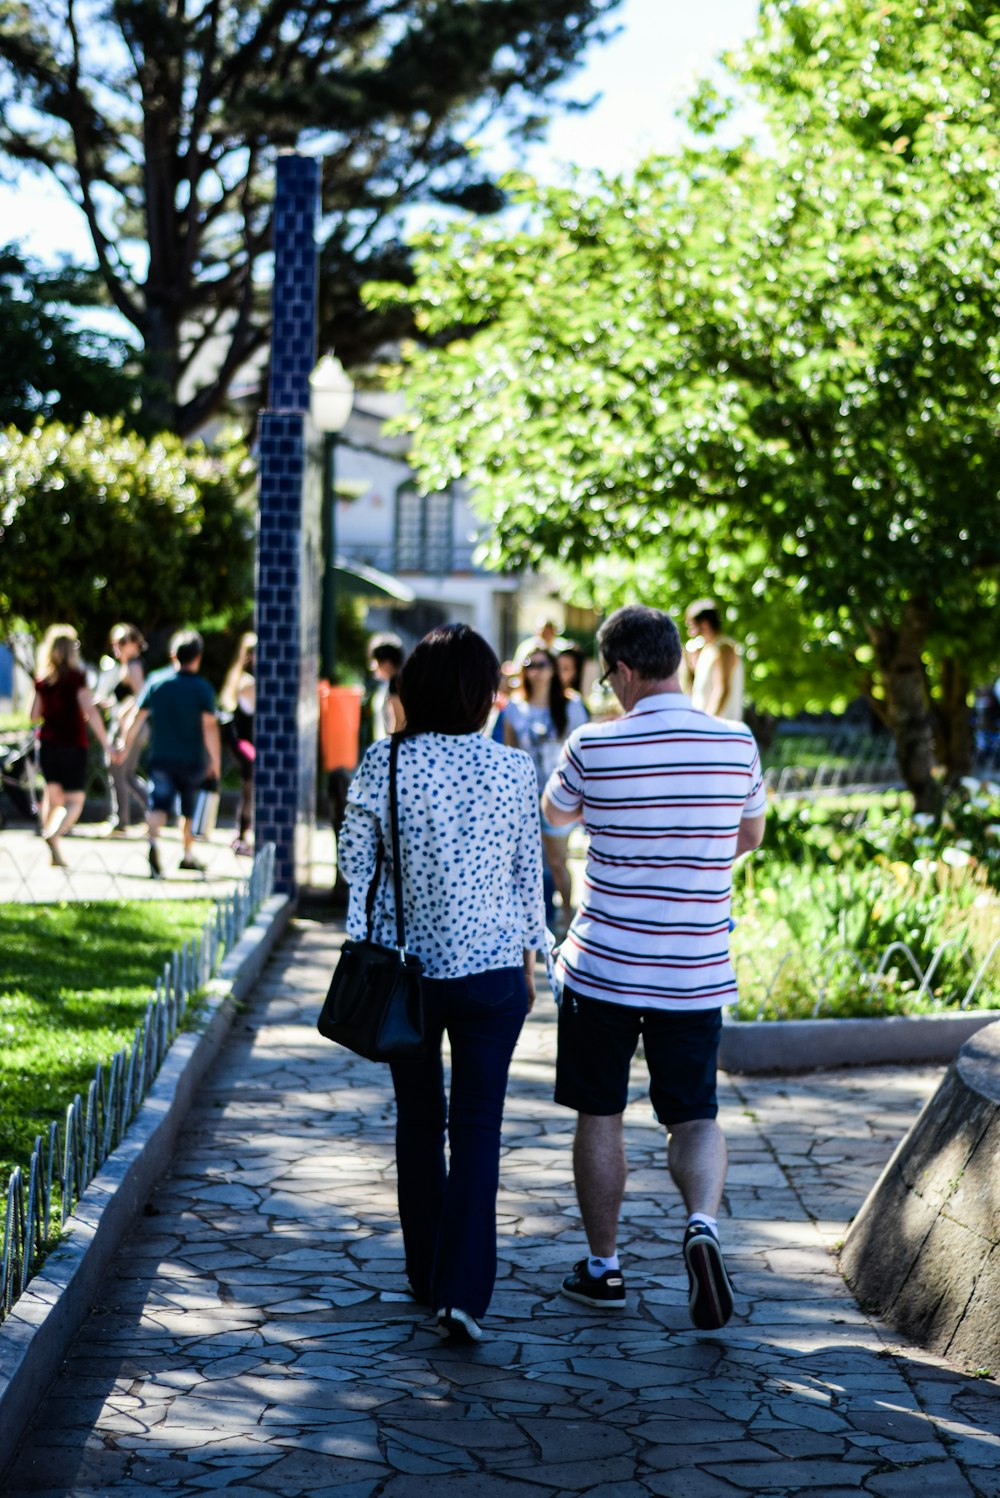 people walking on pathway during daytime